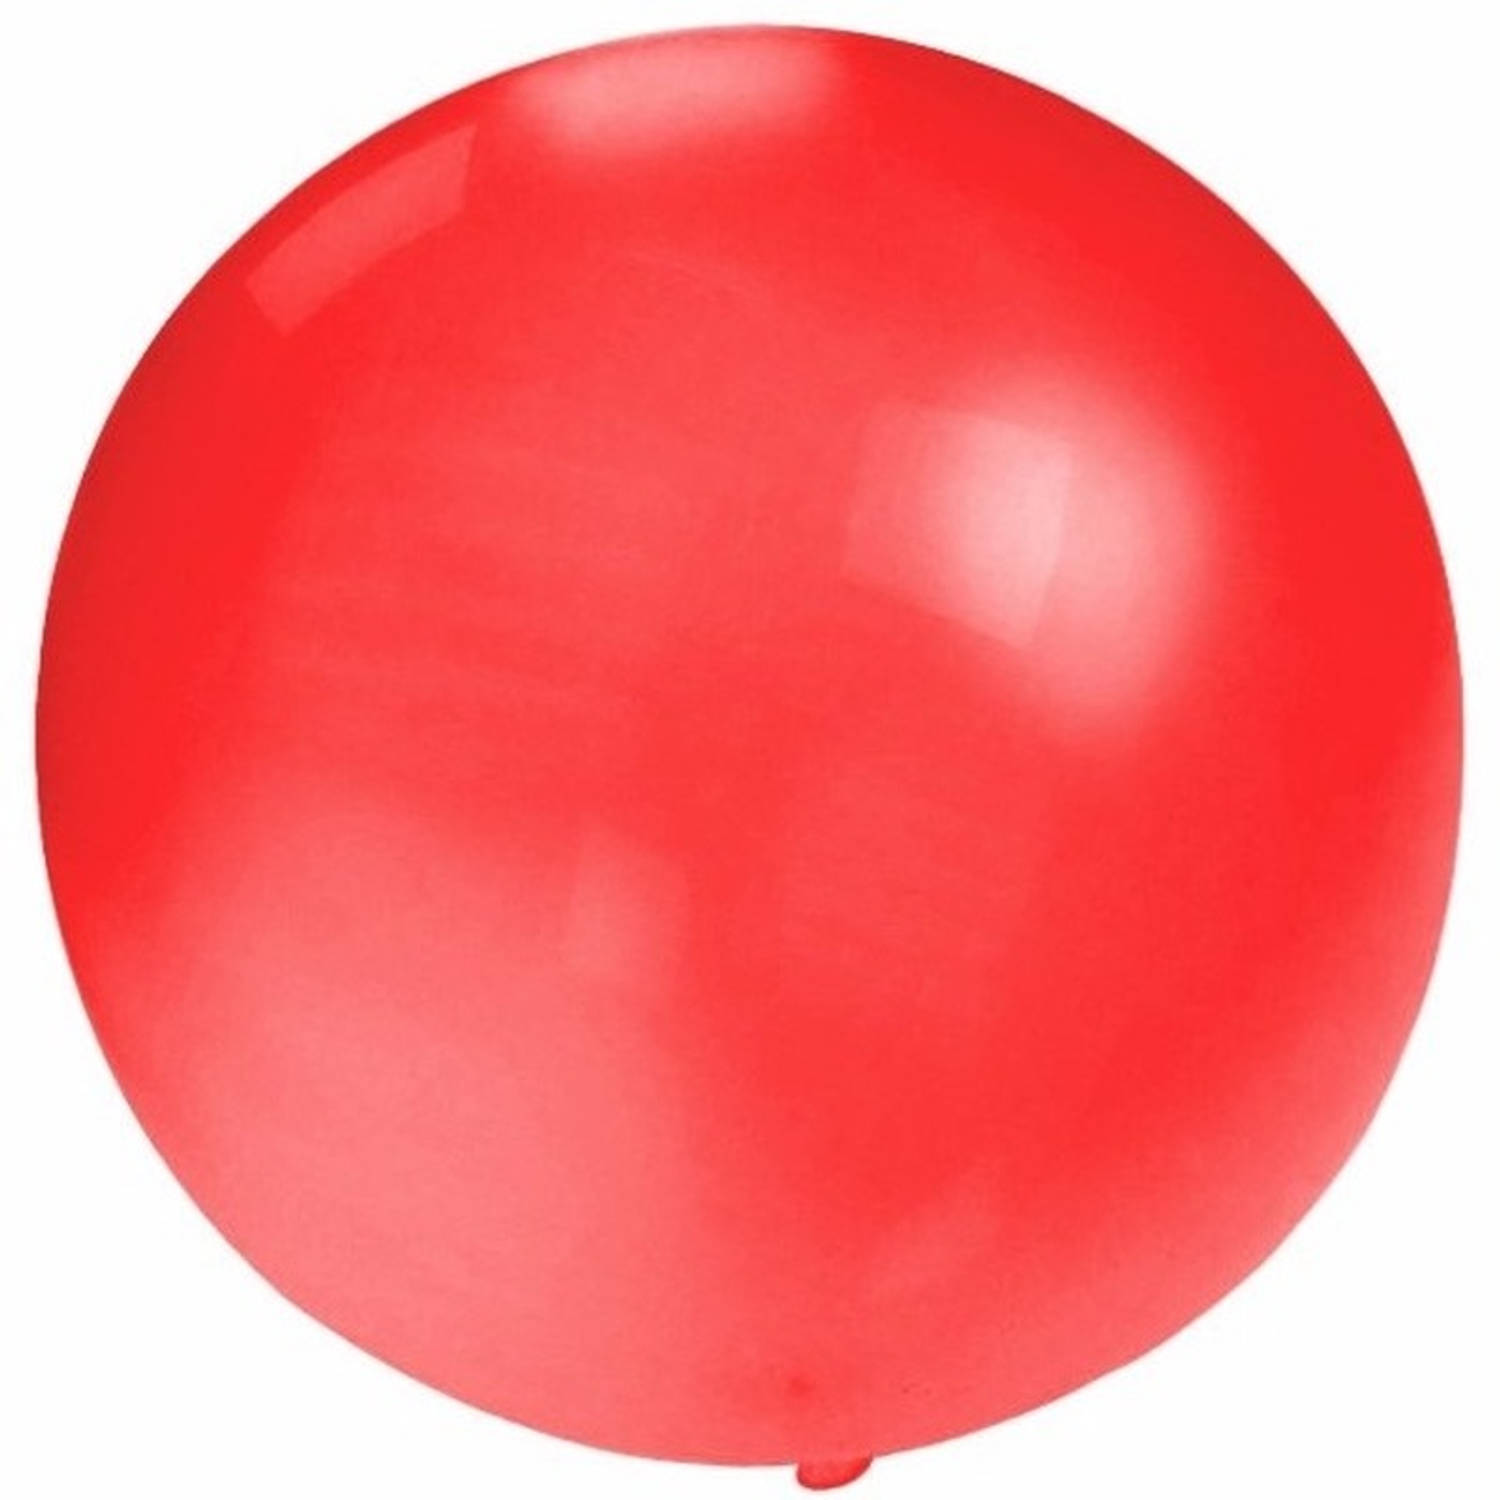 Kerel Meter Voordracht Grote ballon 60 cm rood - Ballonnen | Blokker